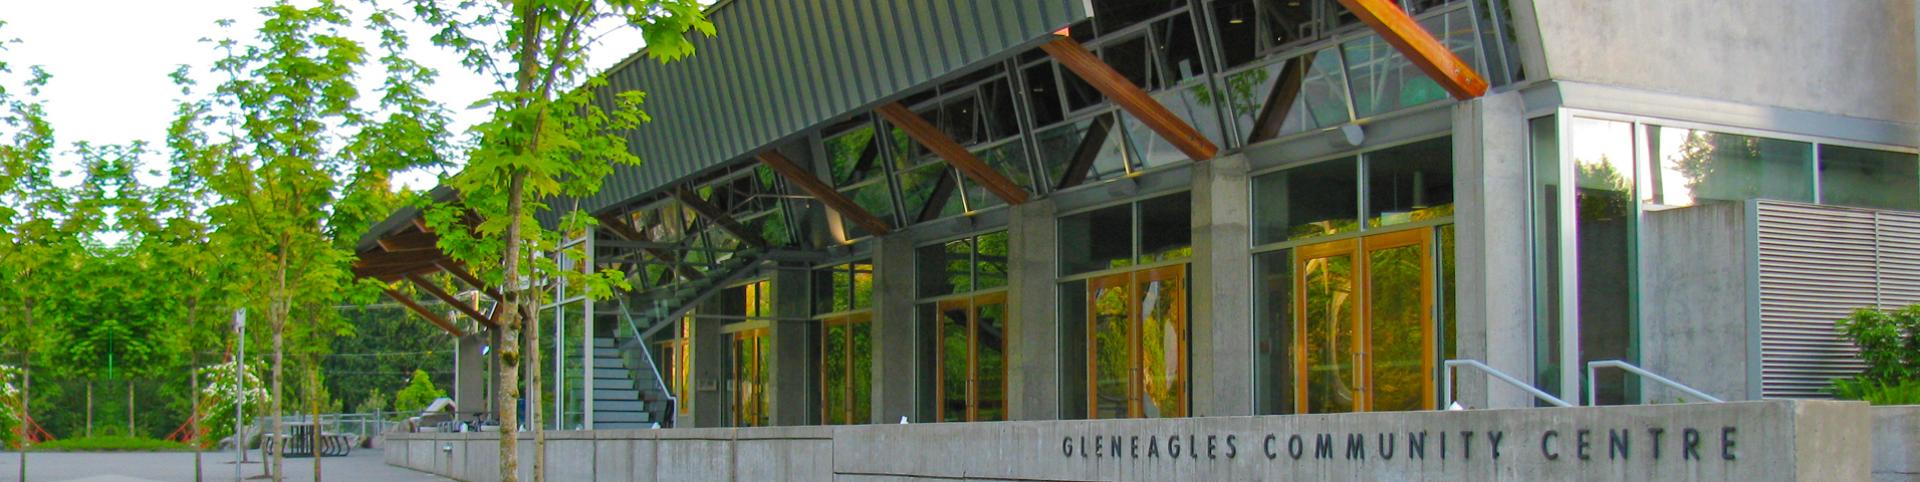 Gleneagles Community Centre